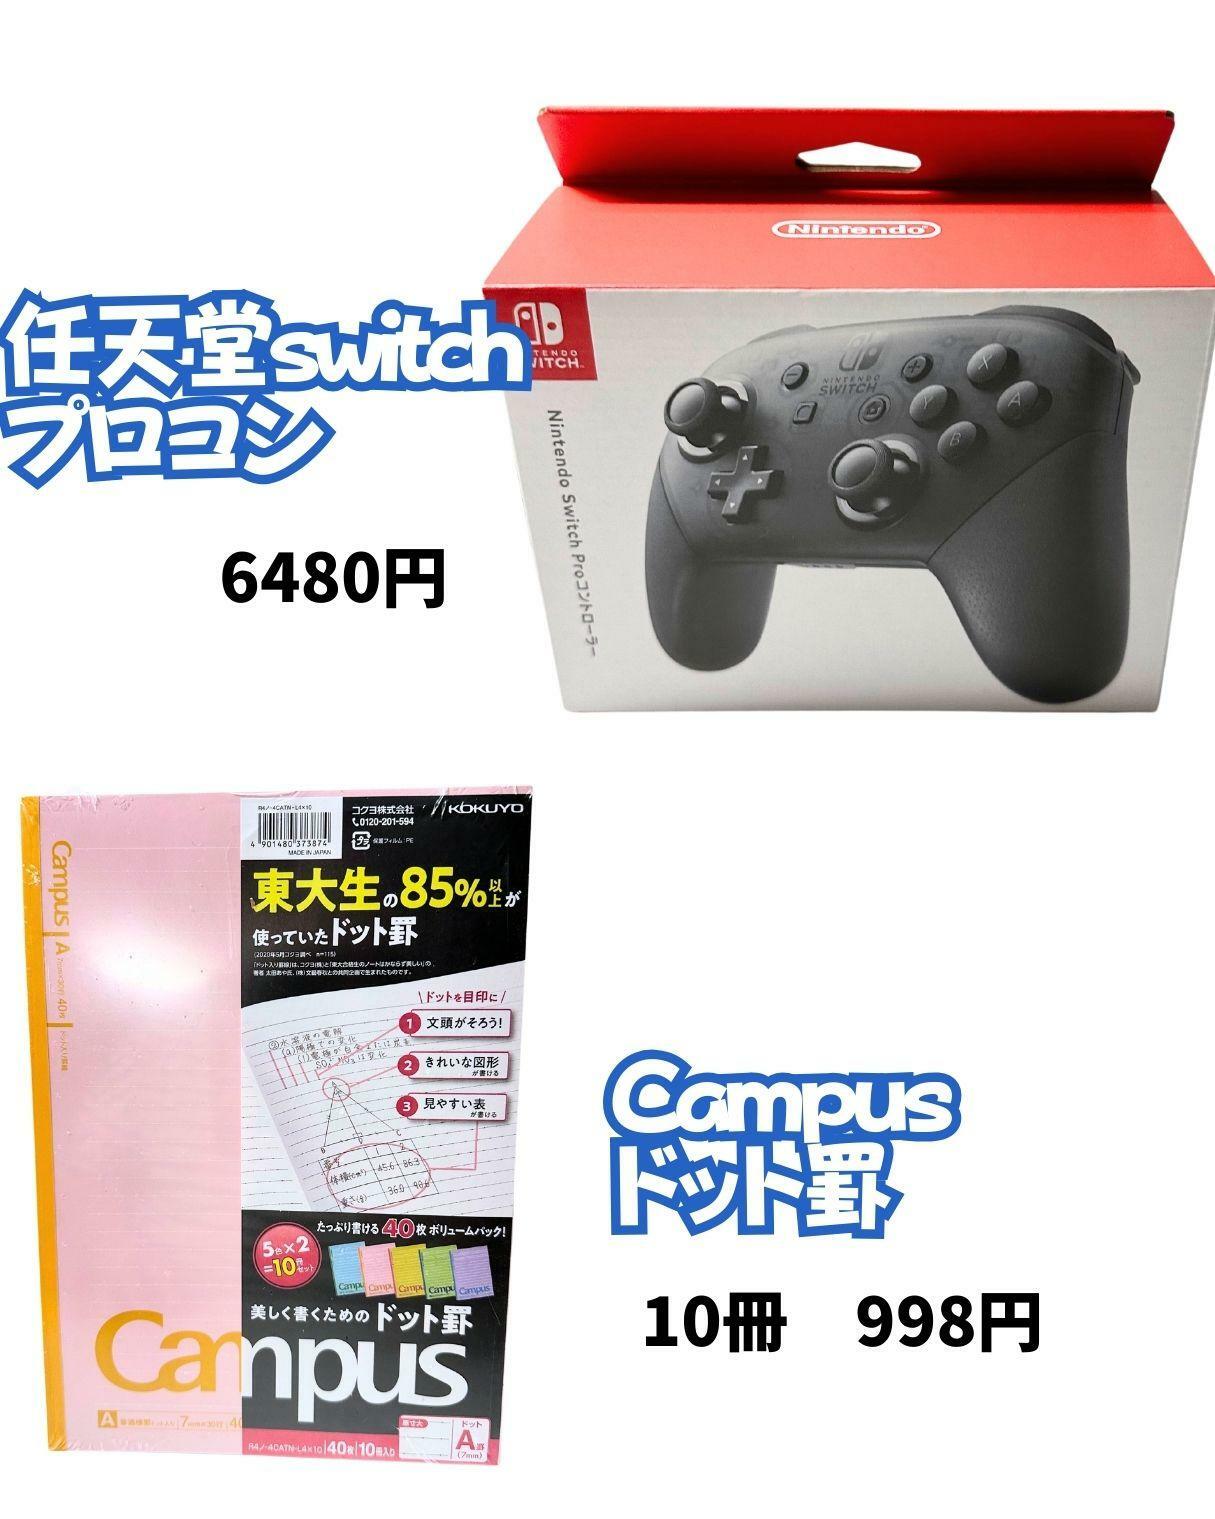 【コストコ】任天堂switchプロコンとキャンパスノート10冊セット